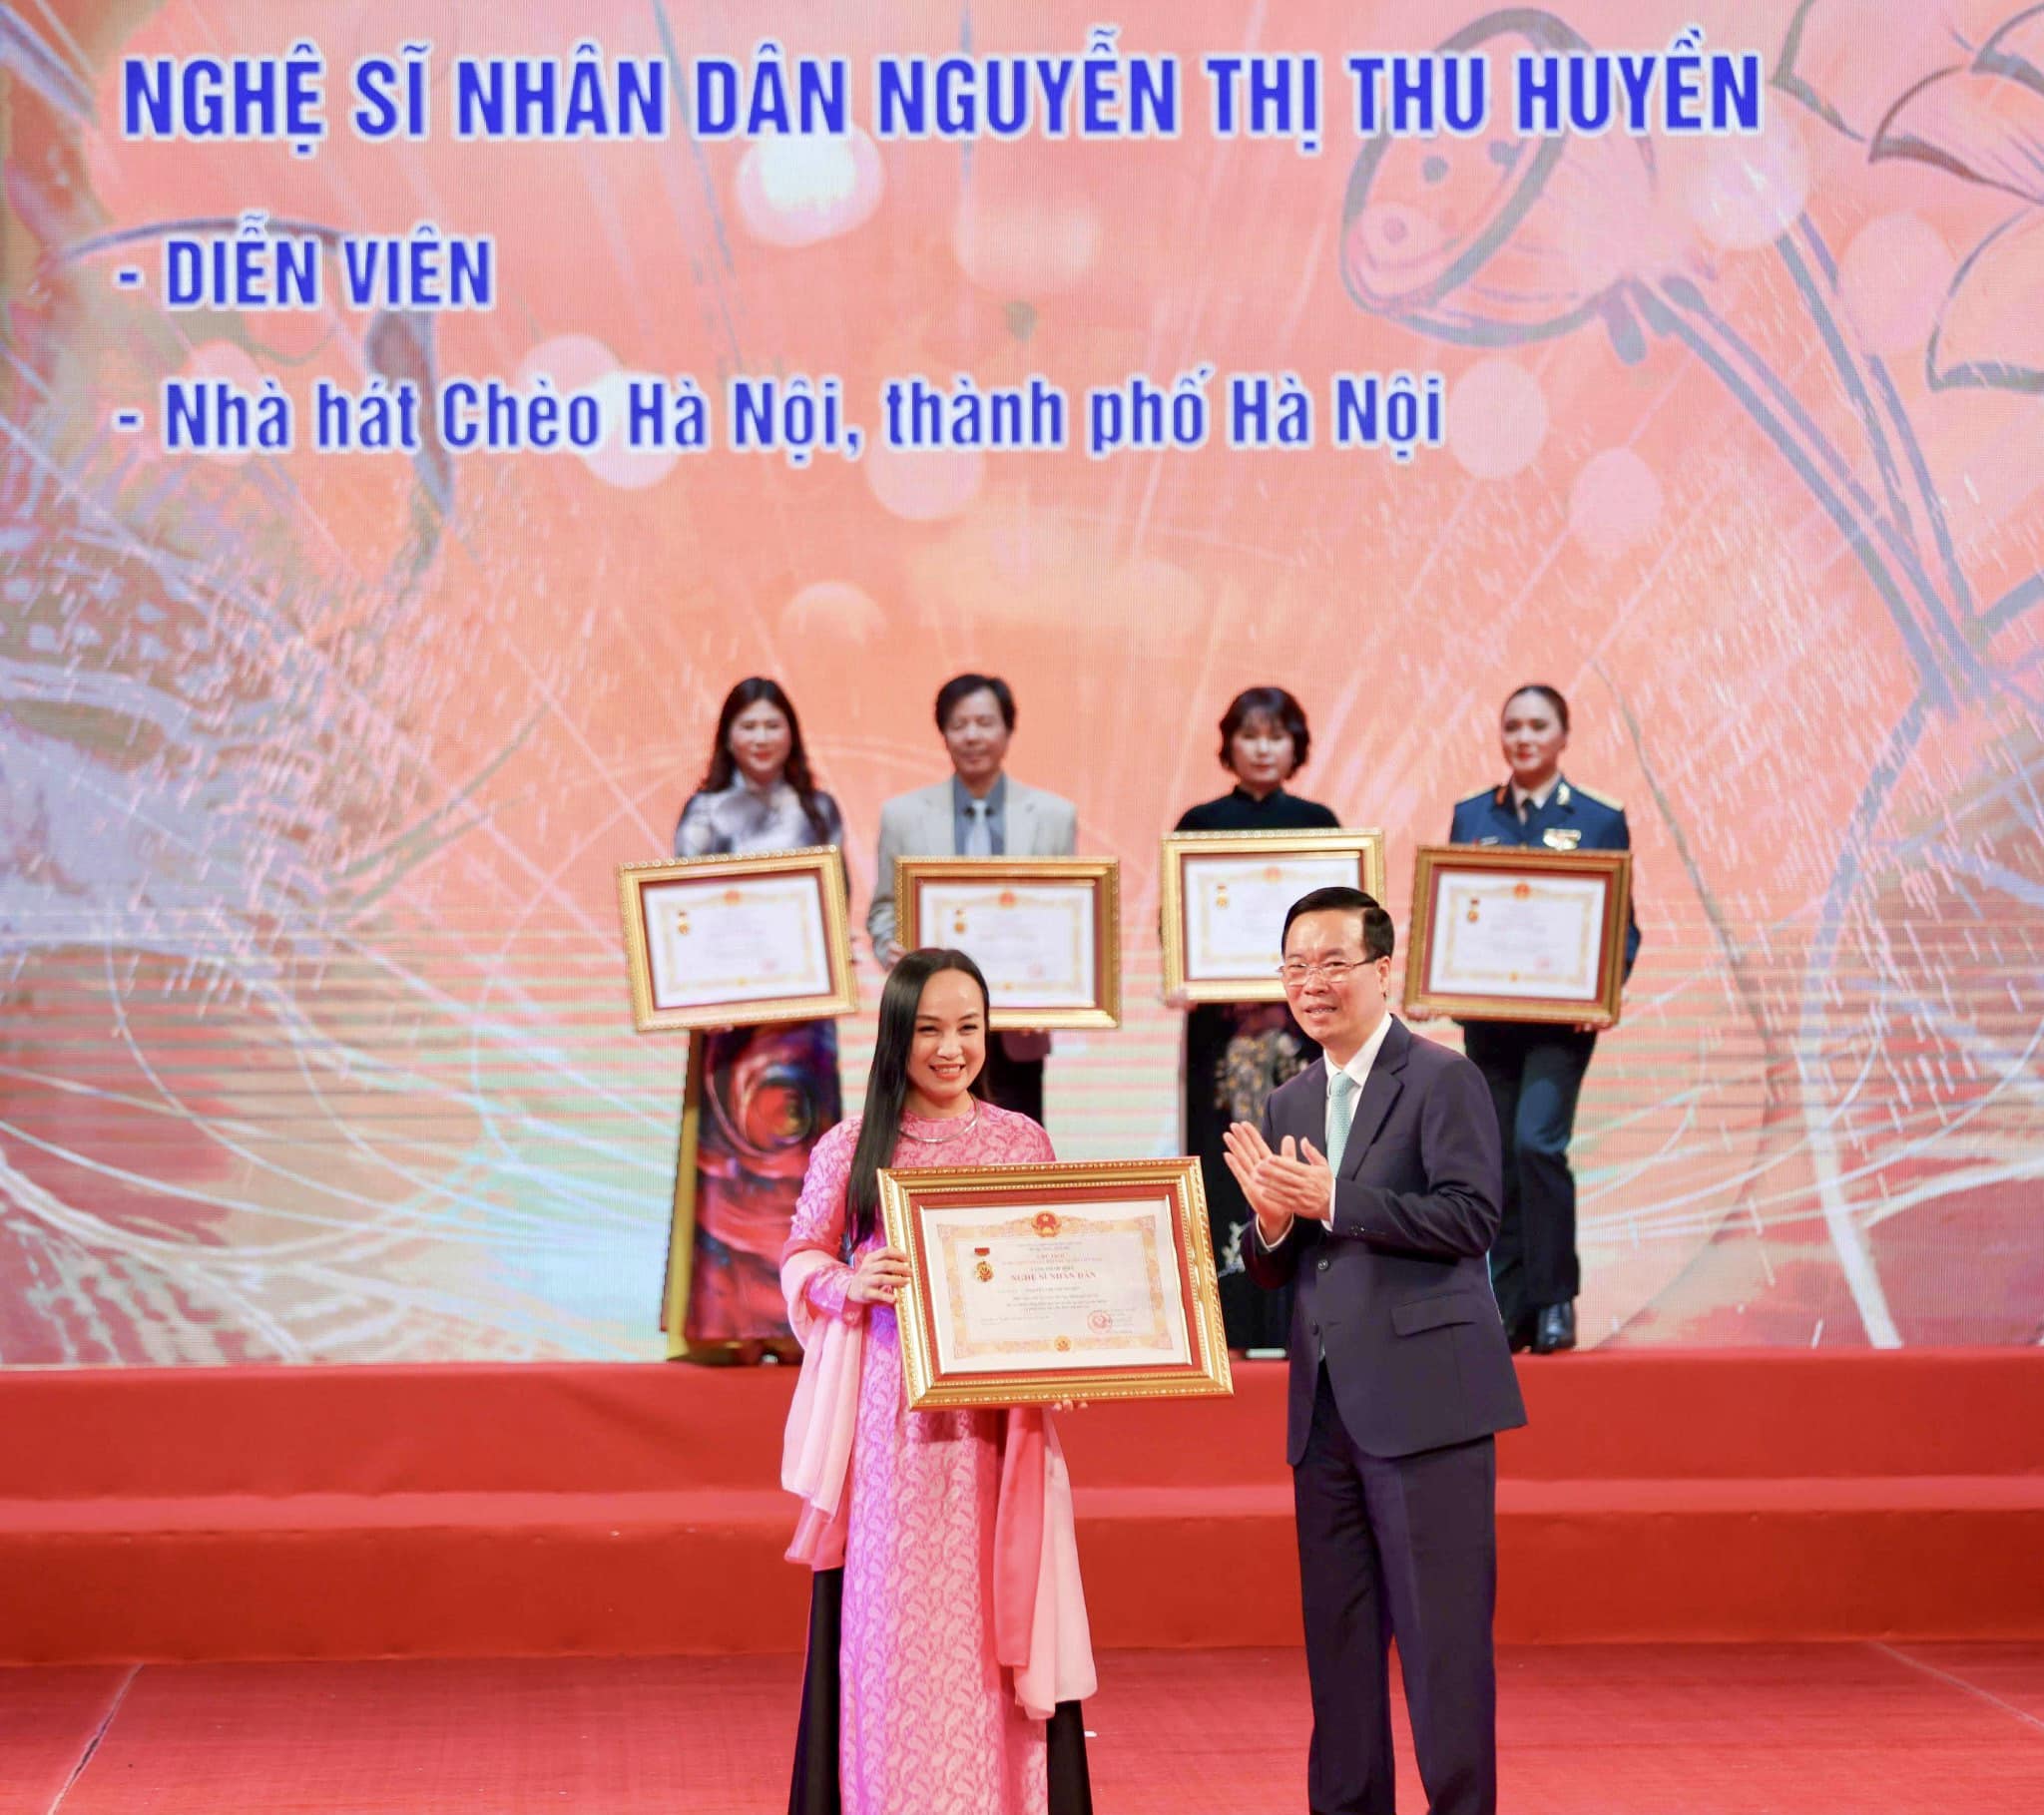 Tâm sự đặc biệt của Thu Huyền khi nhận danh hiệu NSND cùng Tấn Minh đúng 20 năm ngày cưới- Ảnh 2.